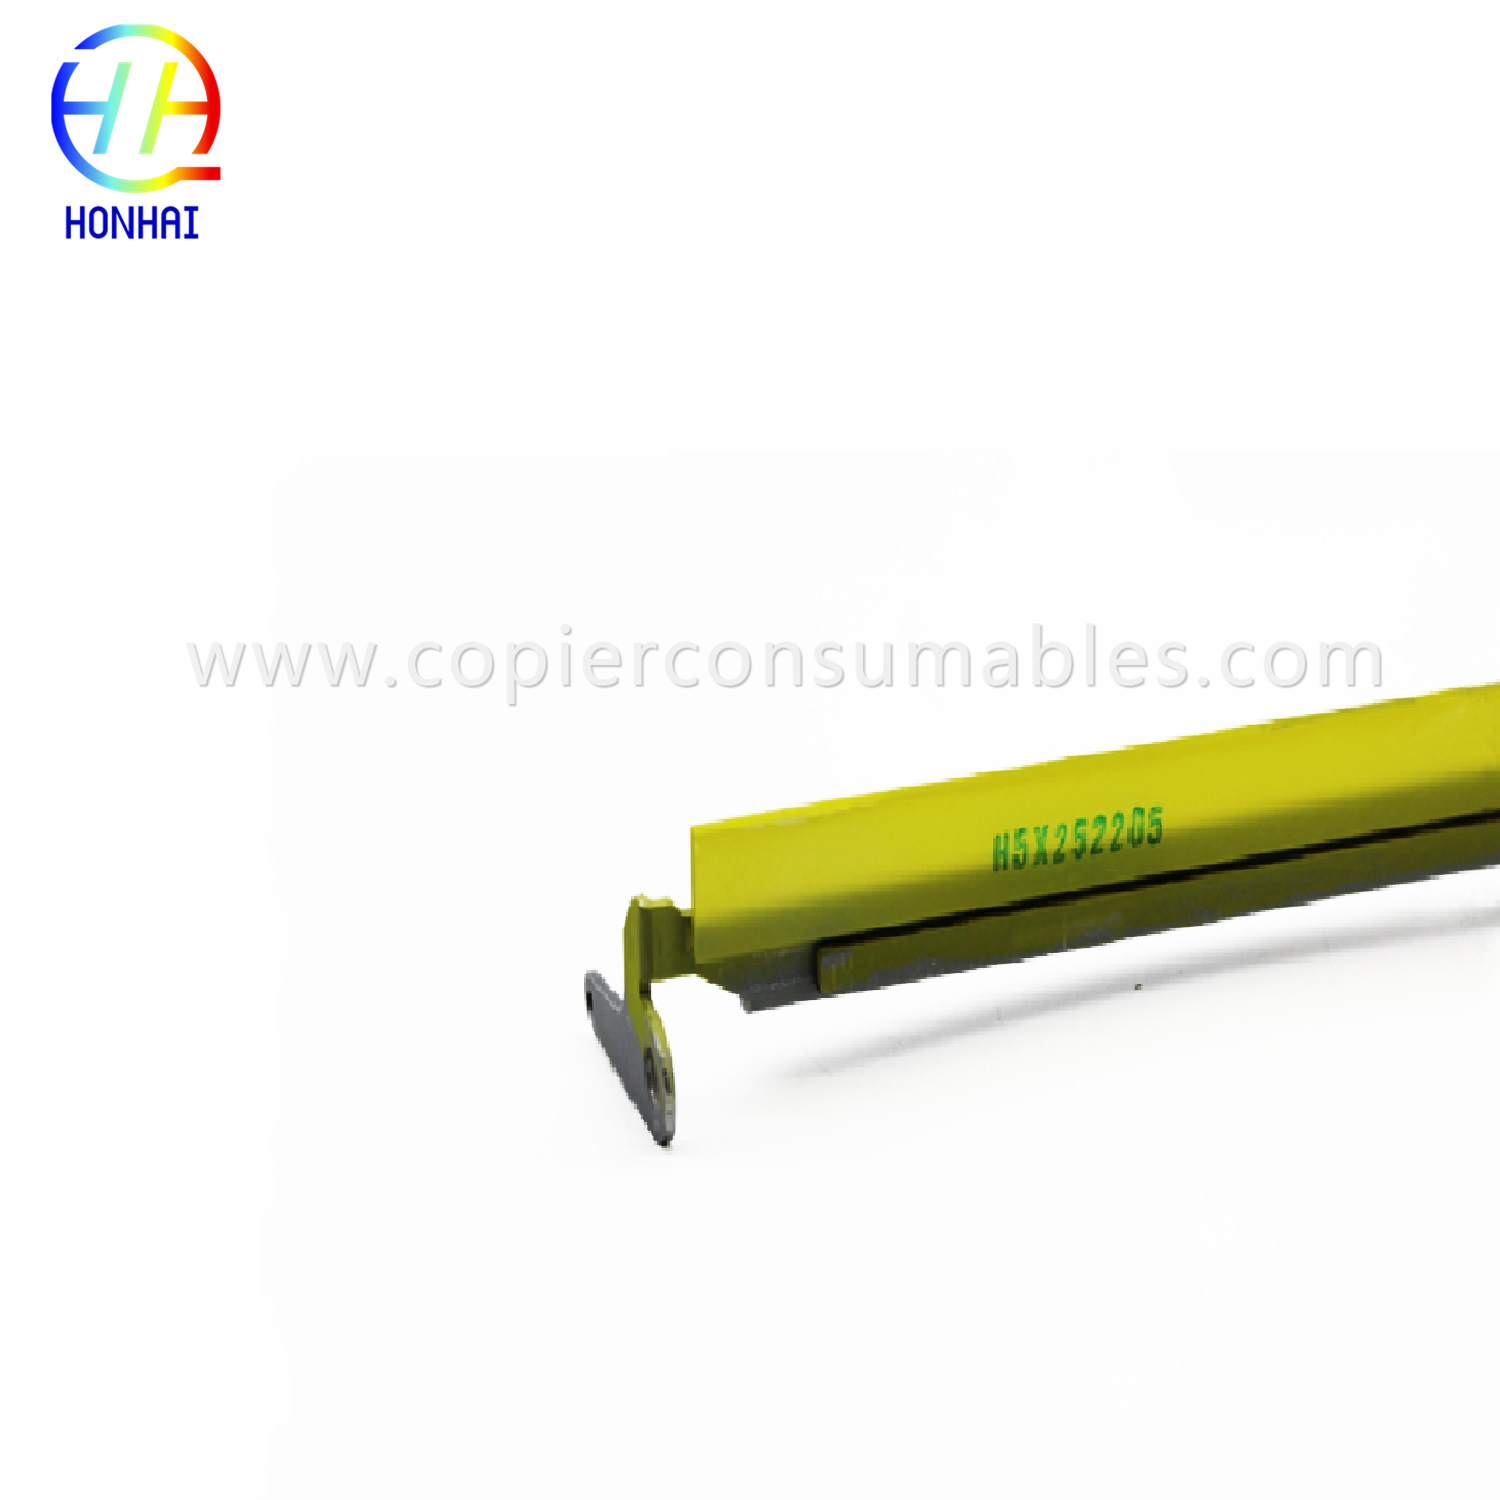 Transfer Belt Cleaning Blade for Konica Minolta Bizhub Press C8000 (A1RFR7F111 A1RFR7F122 A1RFR7F133) (2)